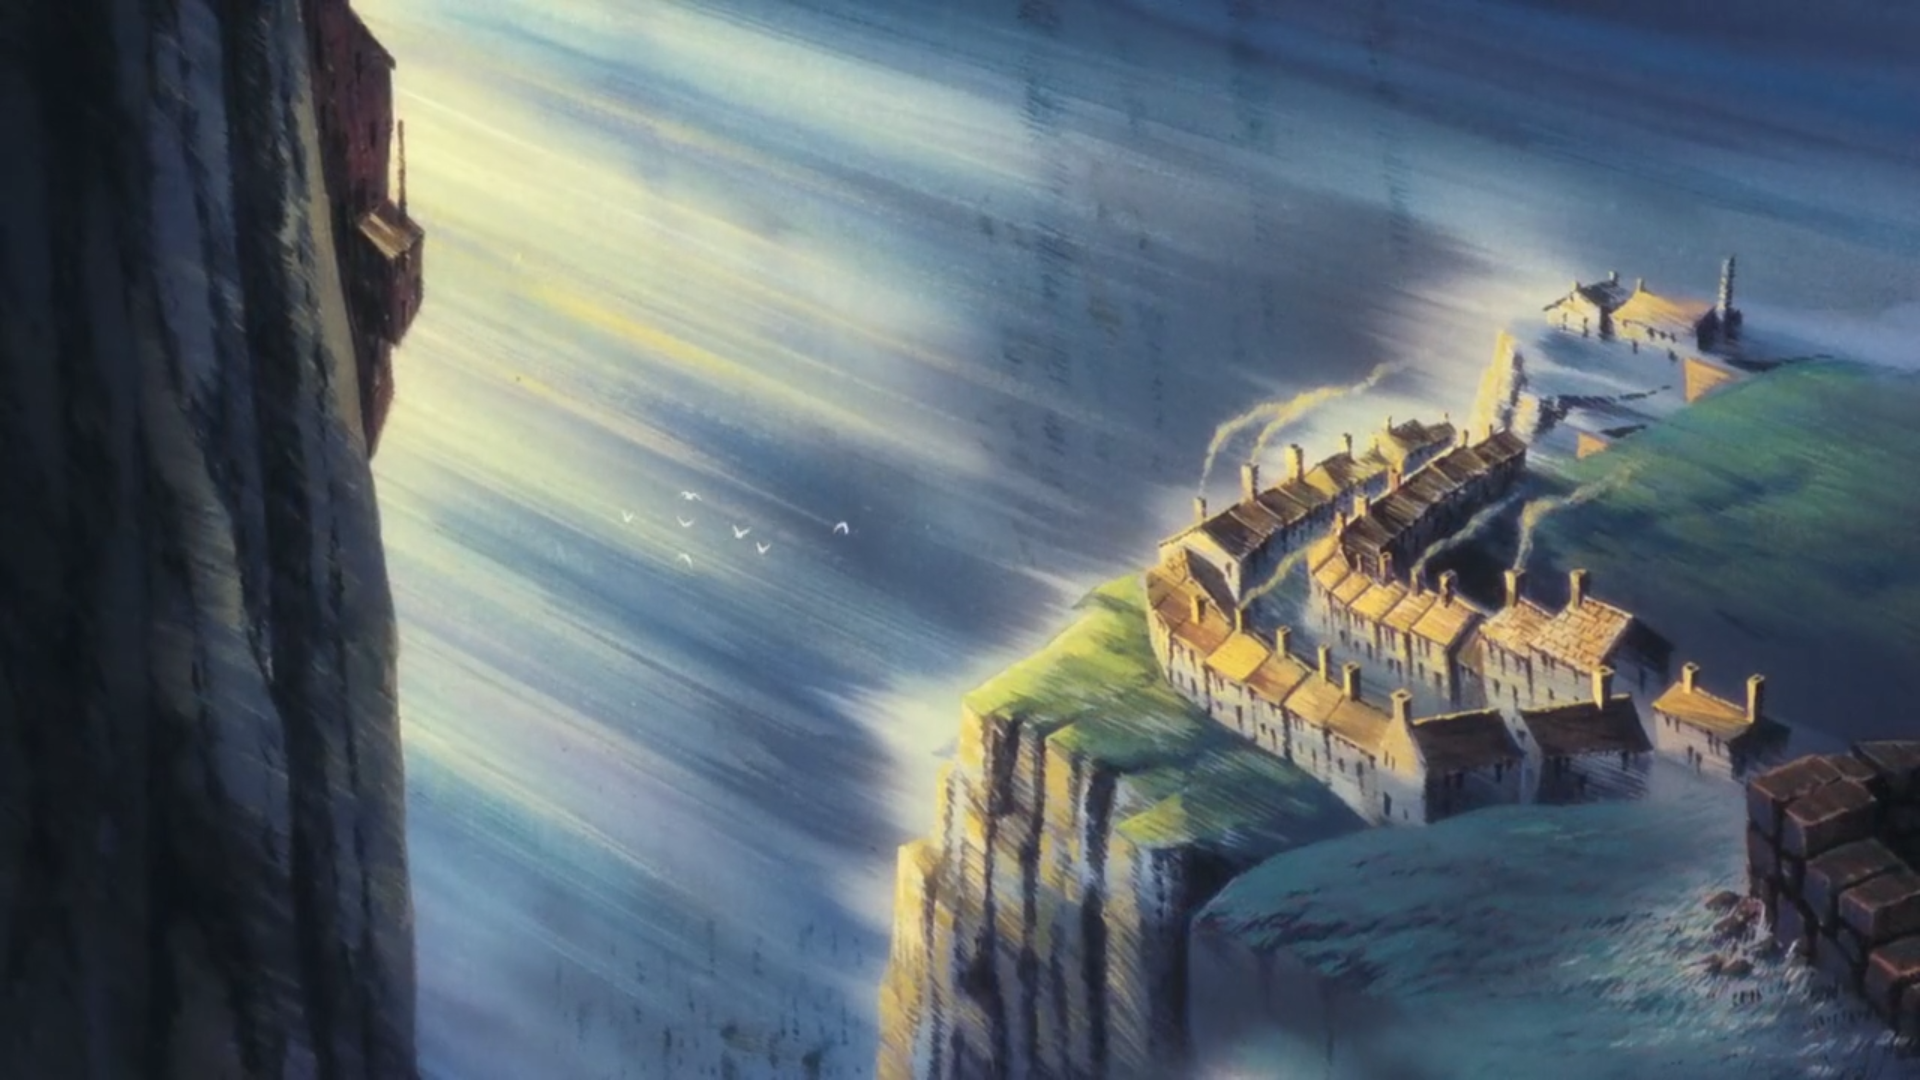 【宫崎骏】《天空之城》一生必看的动画电影！感人的童年回忆。_哔哩哔哩 (゜-゜)つロ 干杯~-bilibili